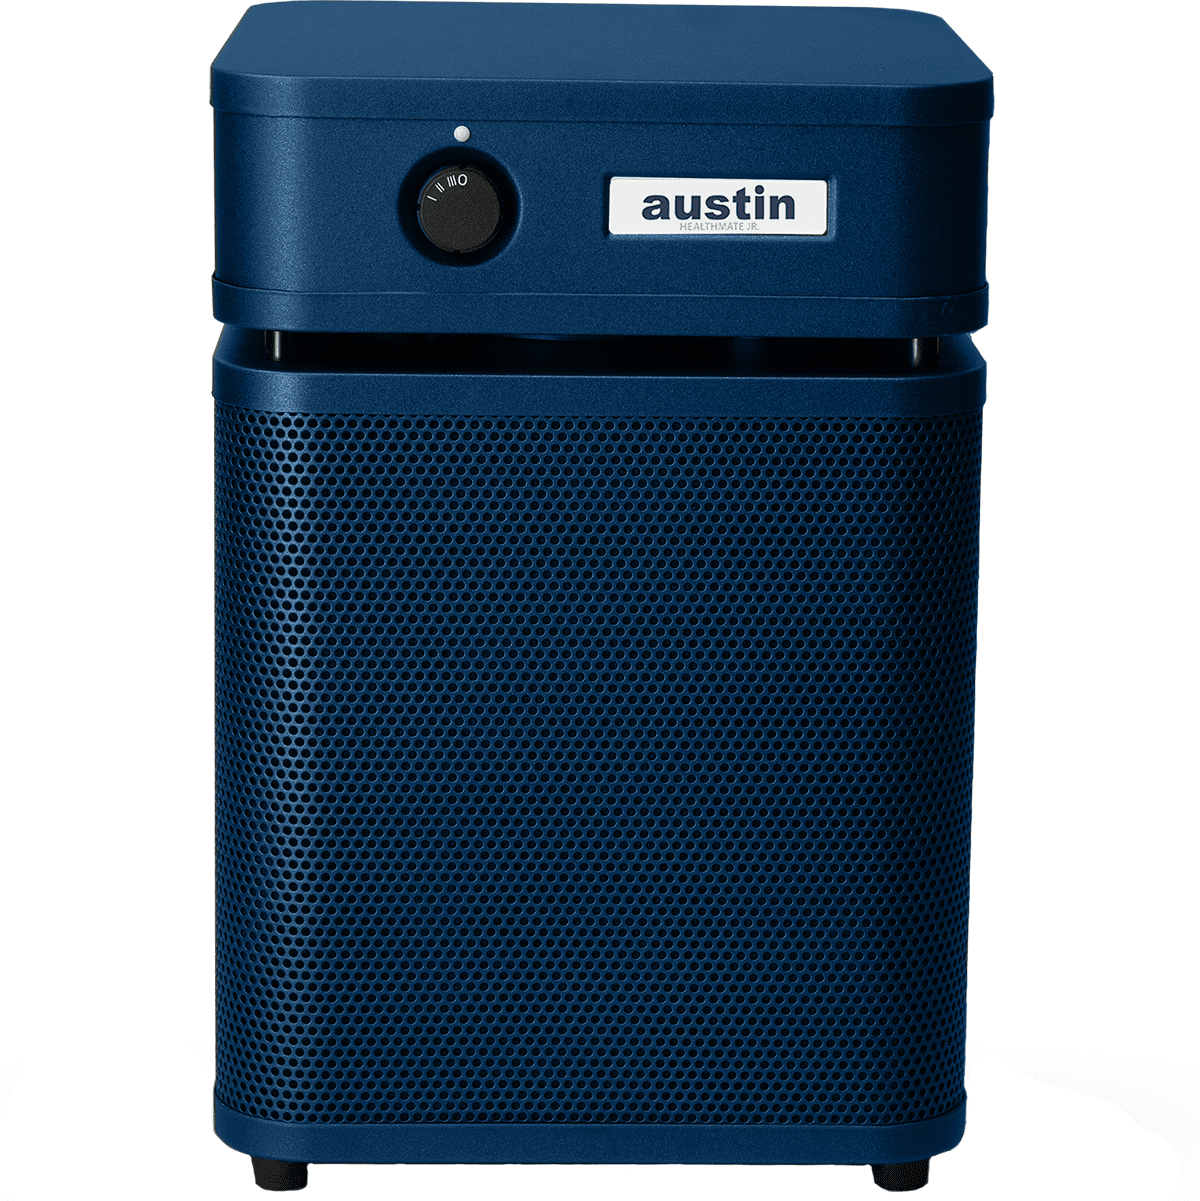 Austin Air HealthMate Plus Jr. HM250 Air Purifier - Midnight Blue